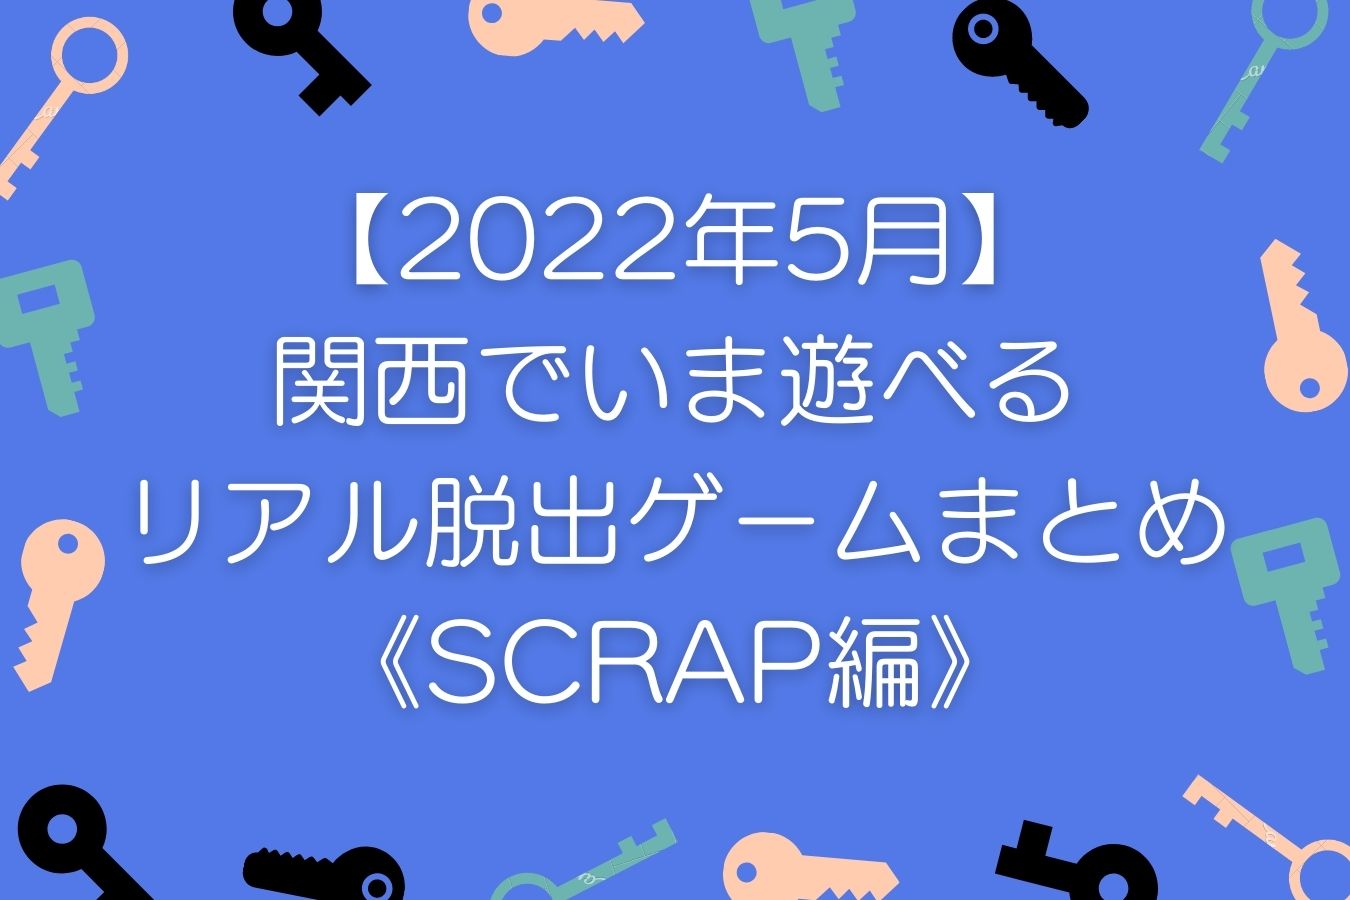 【2022年5月】-関西でいま遊べる-リアル脱出ゲームまとめ-《SCRAP編》